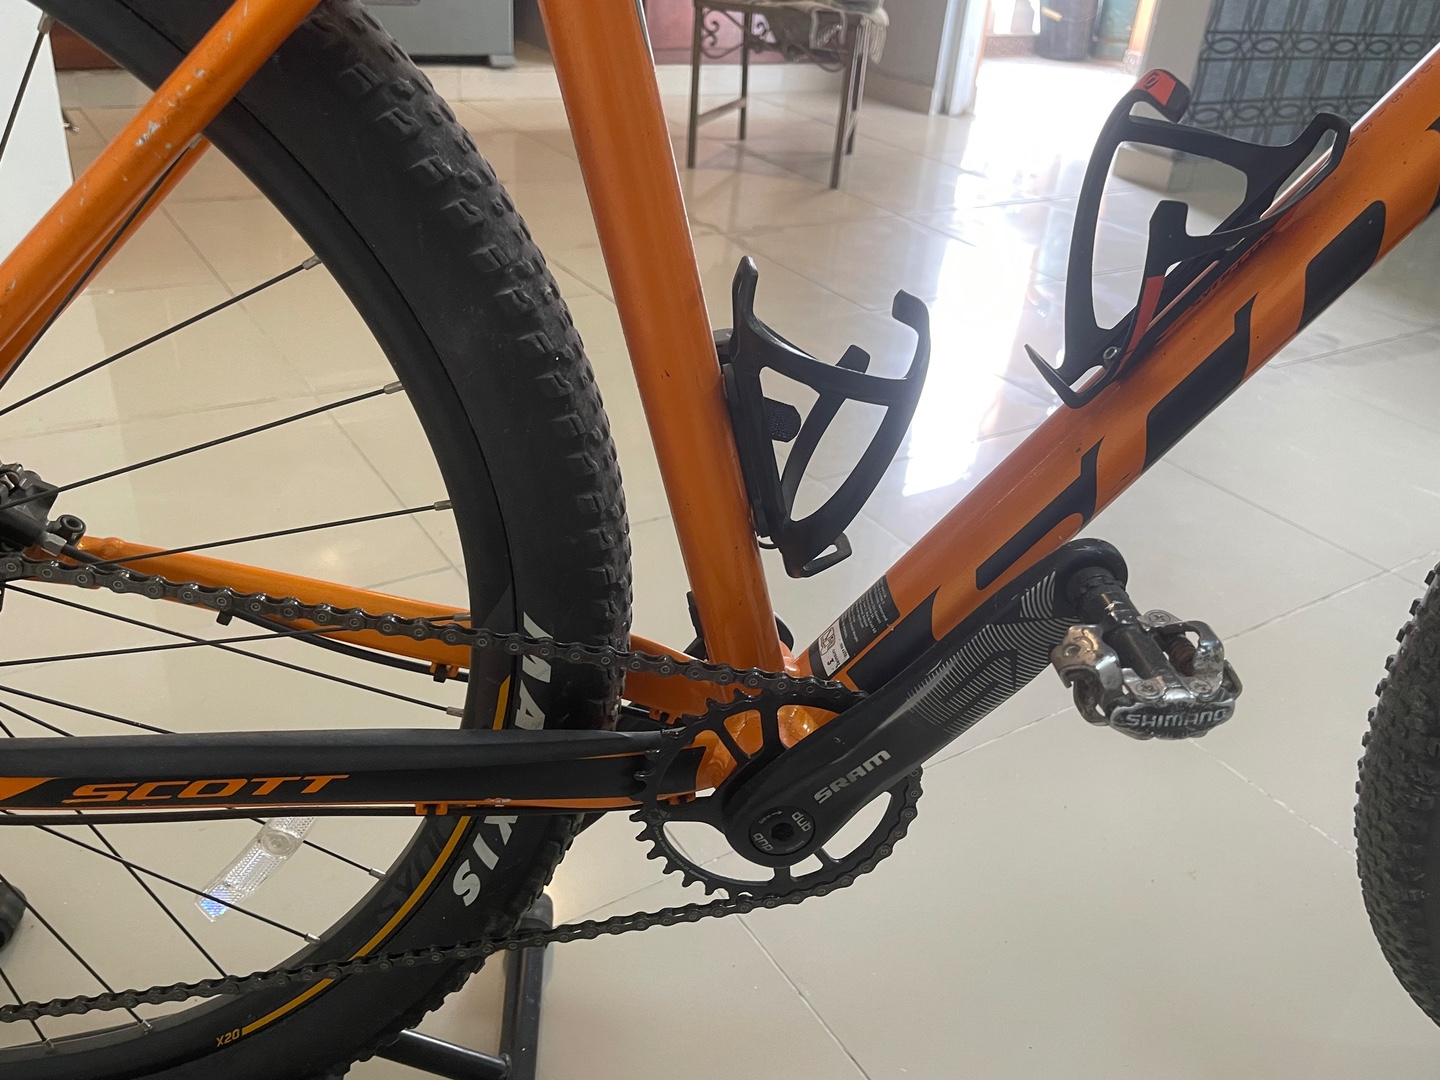 bicicletas y accesorios - Bicicleta Schott 970 color Naranja en Venta.  6